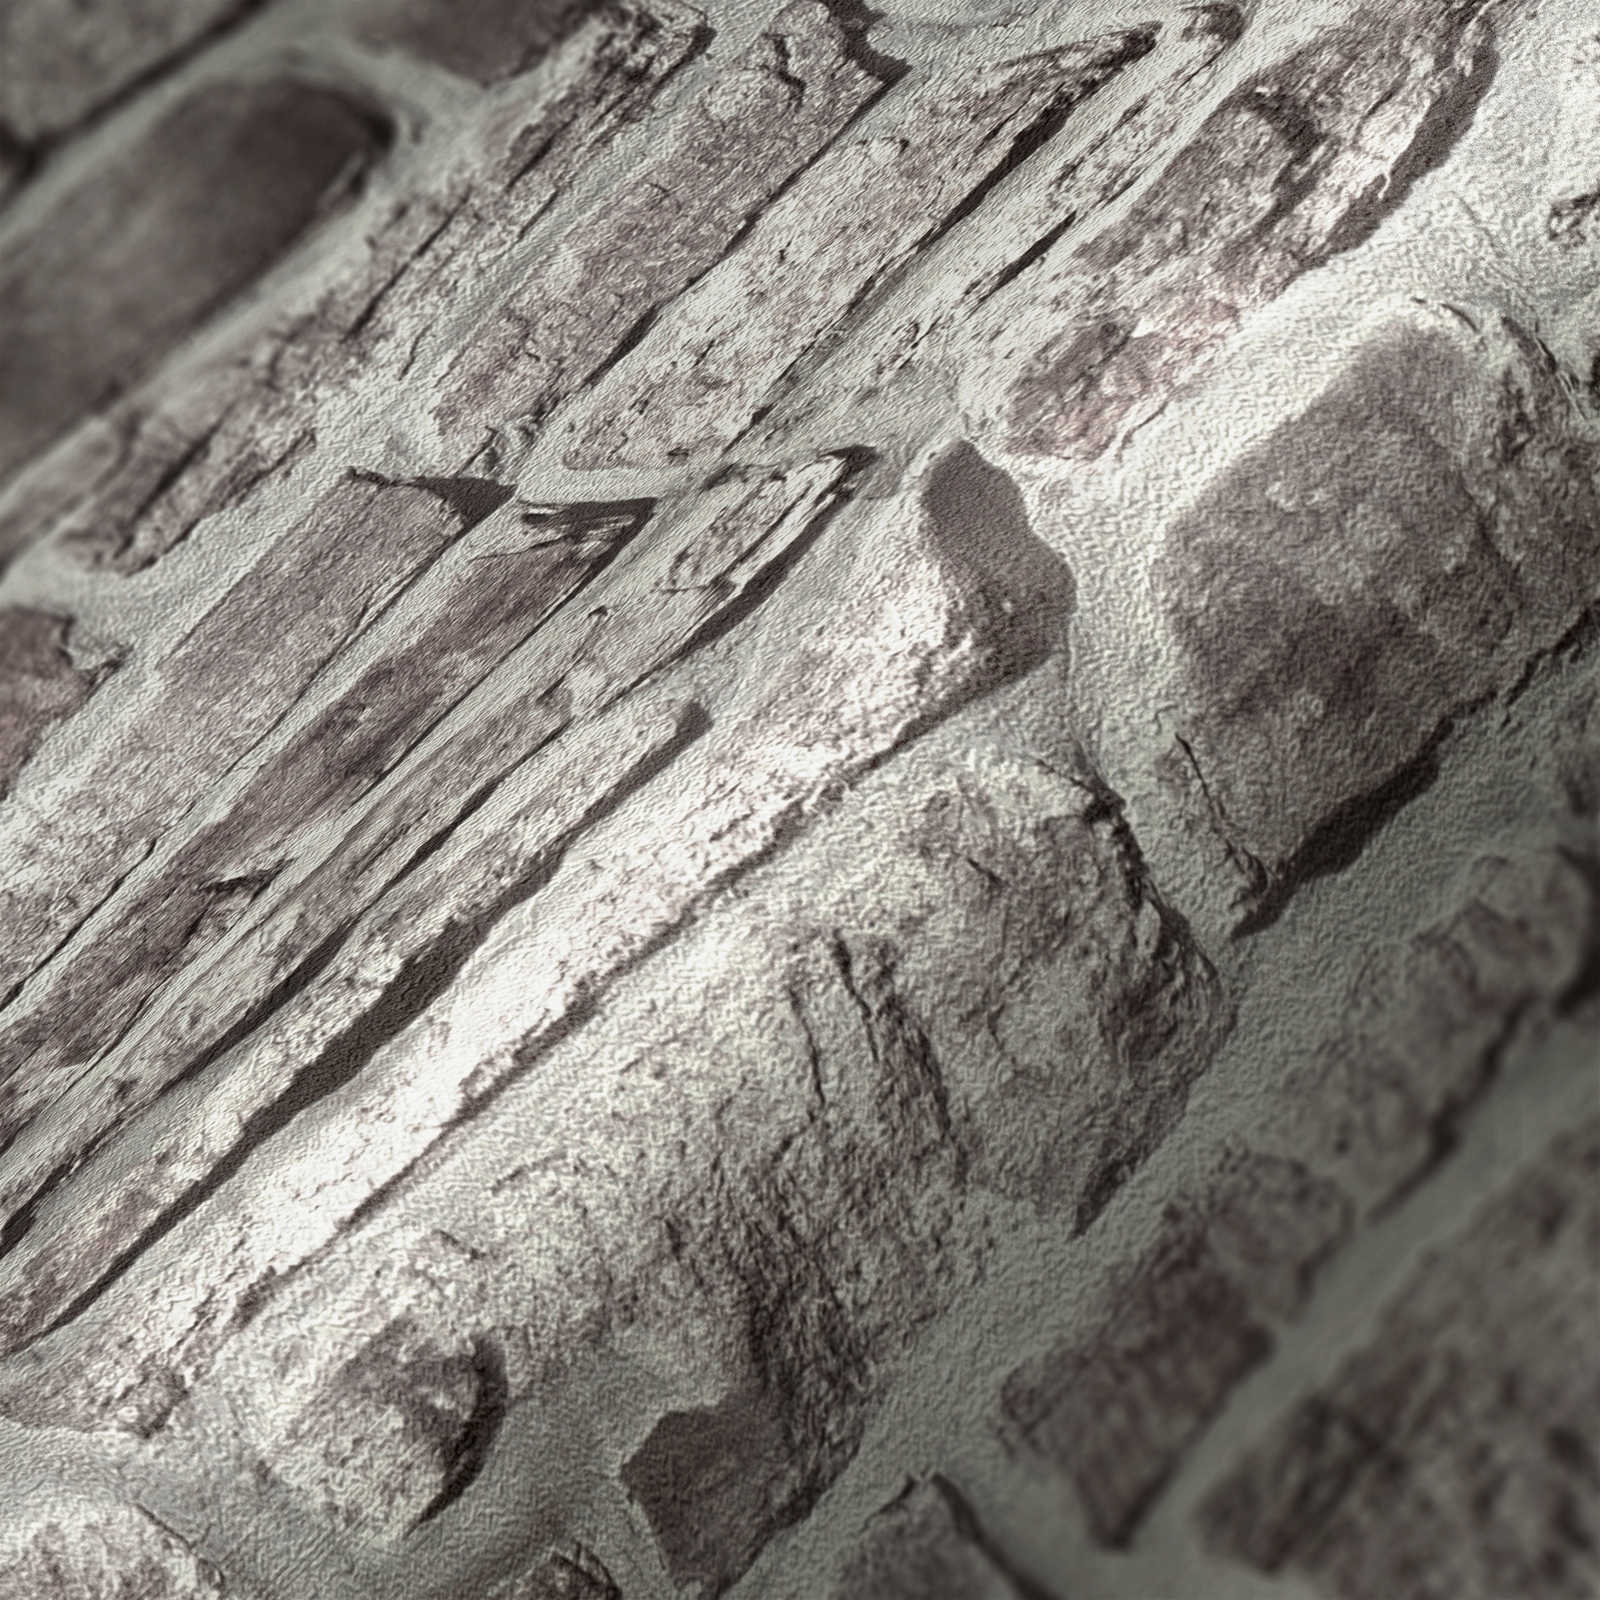             Steinoptik Vliestapete natürliche Maueroptik – Grau, Grau, Weiß
        